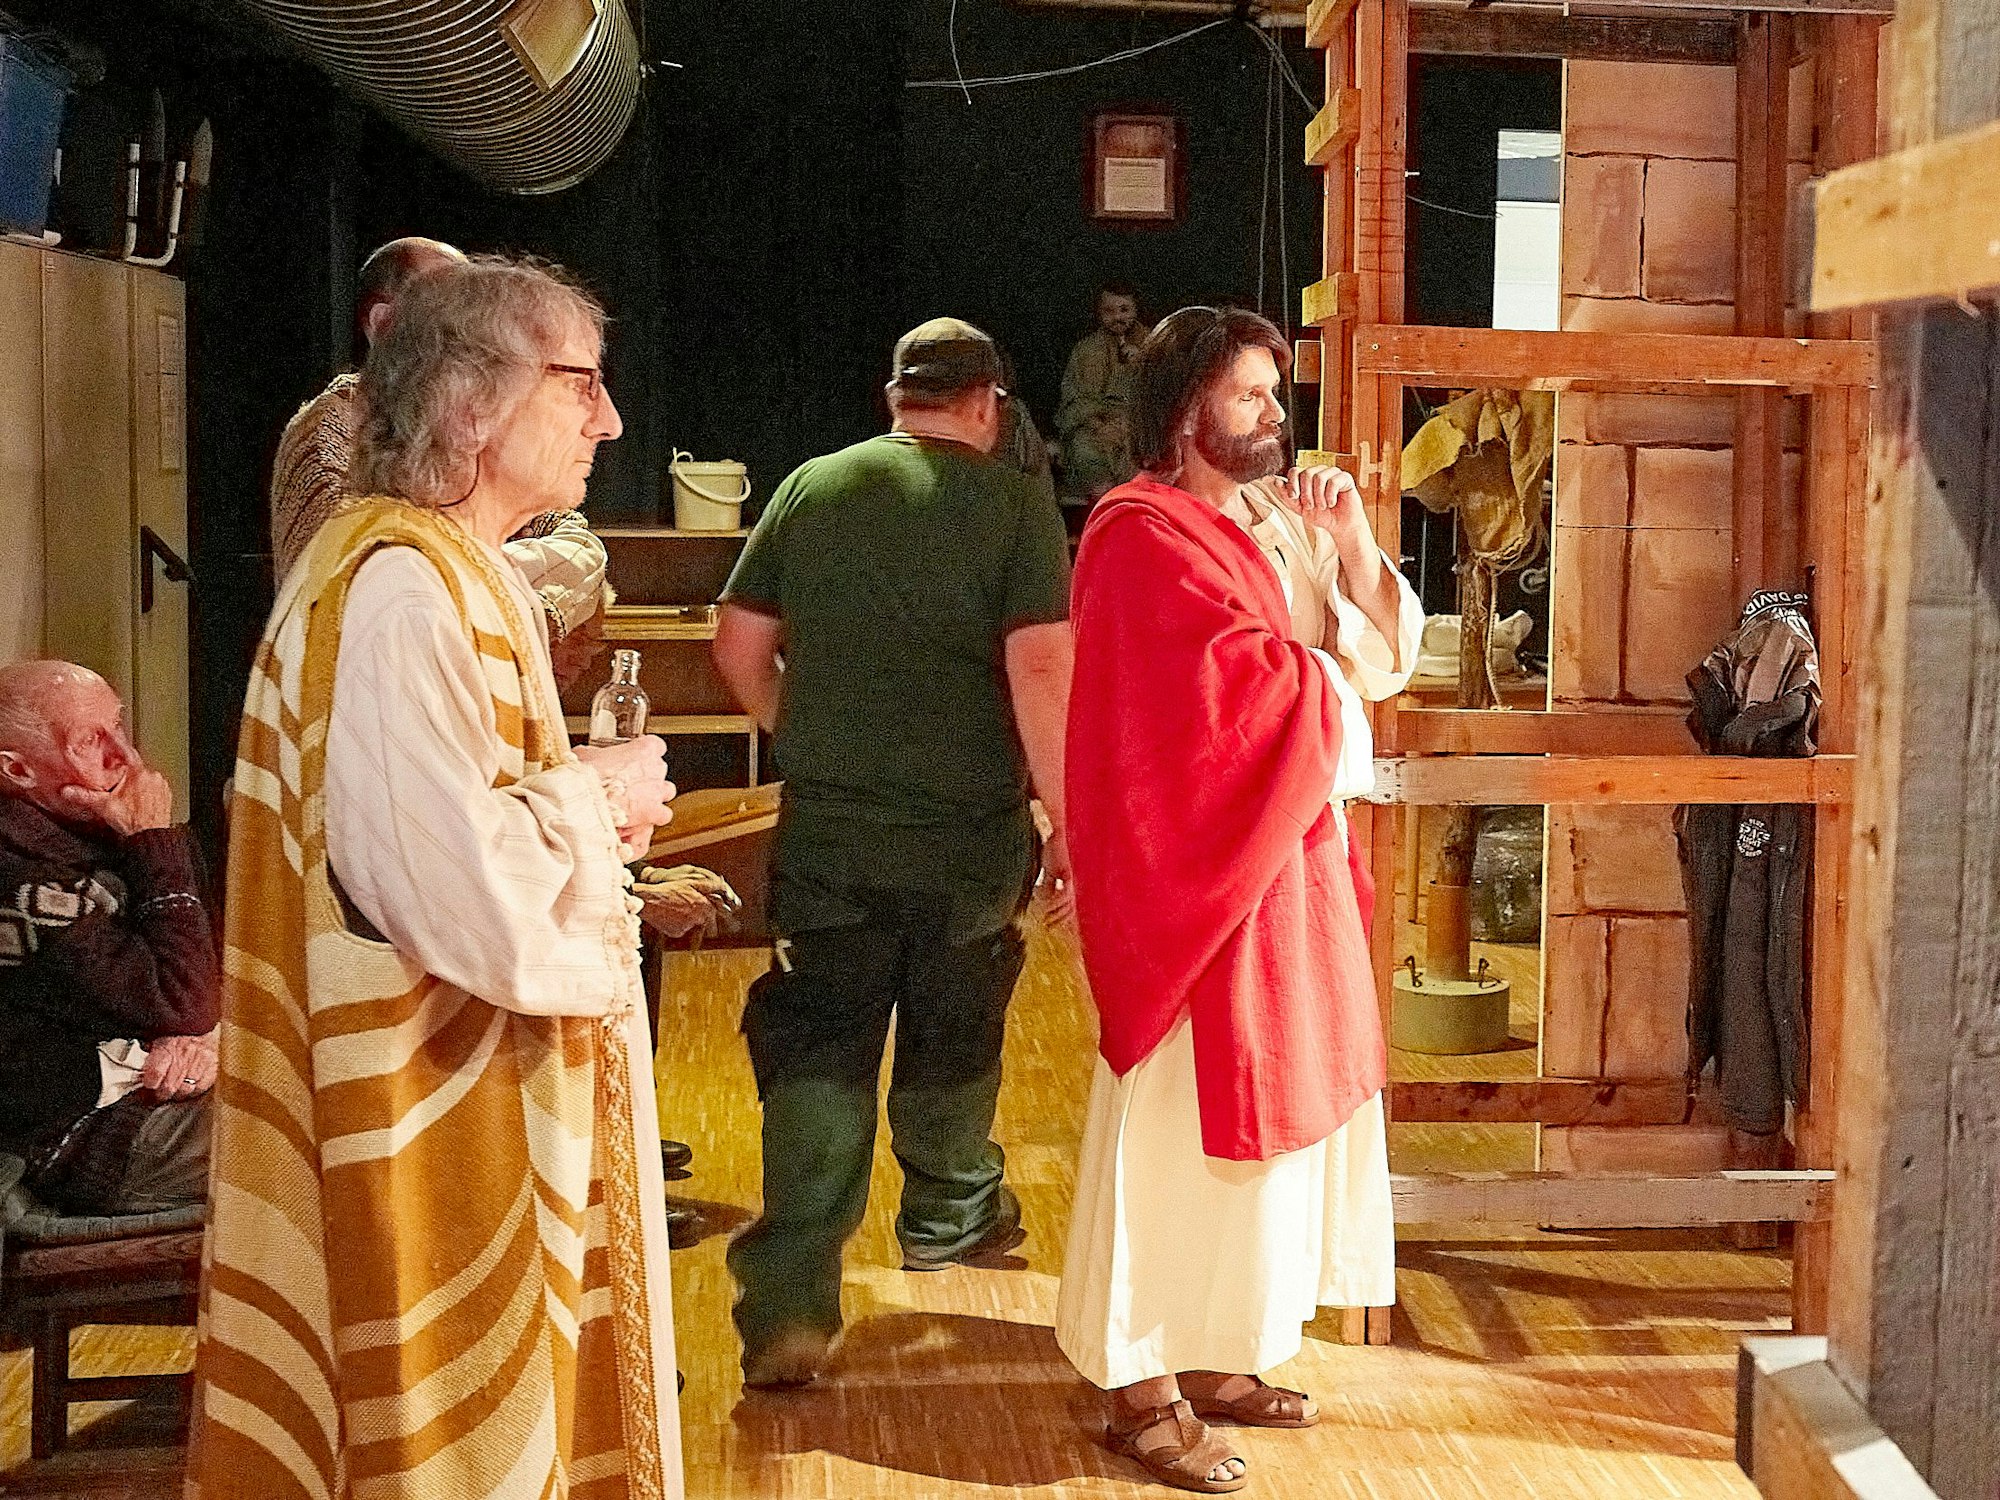 André Evertz trägt ein weiß-rotes Gewand. Er steht hinter der Bühne und wartet auf seinen Auftritt als Jesus bei den Passionsspielen.